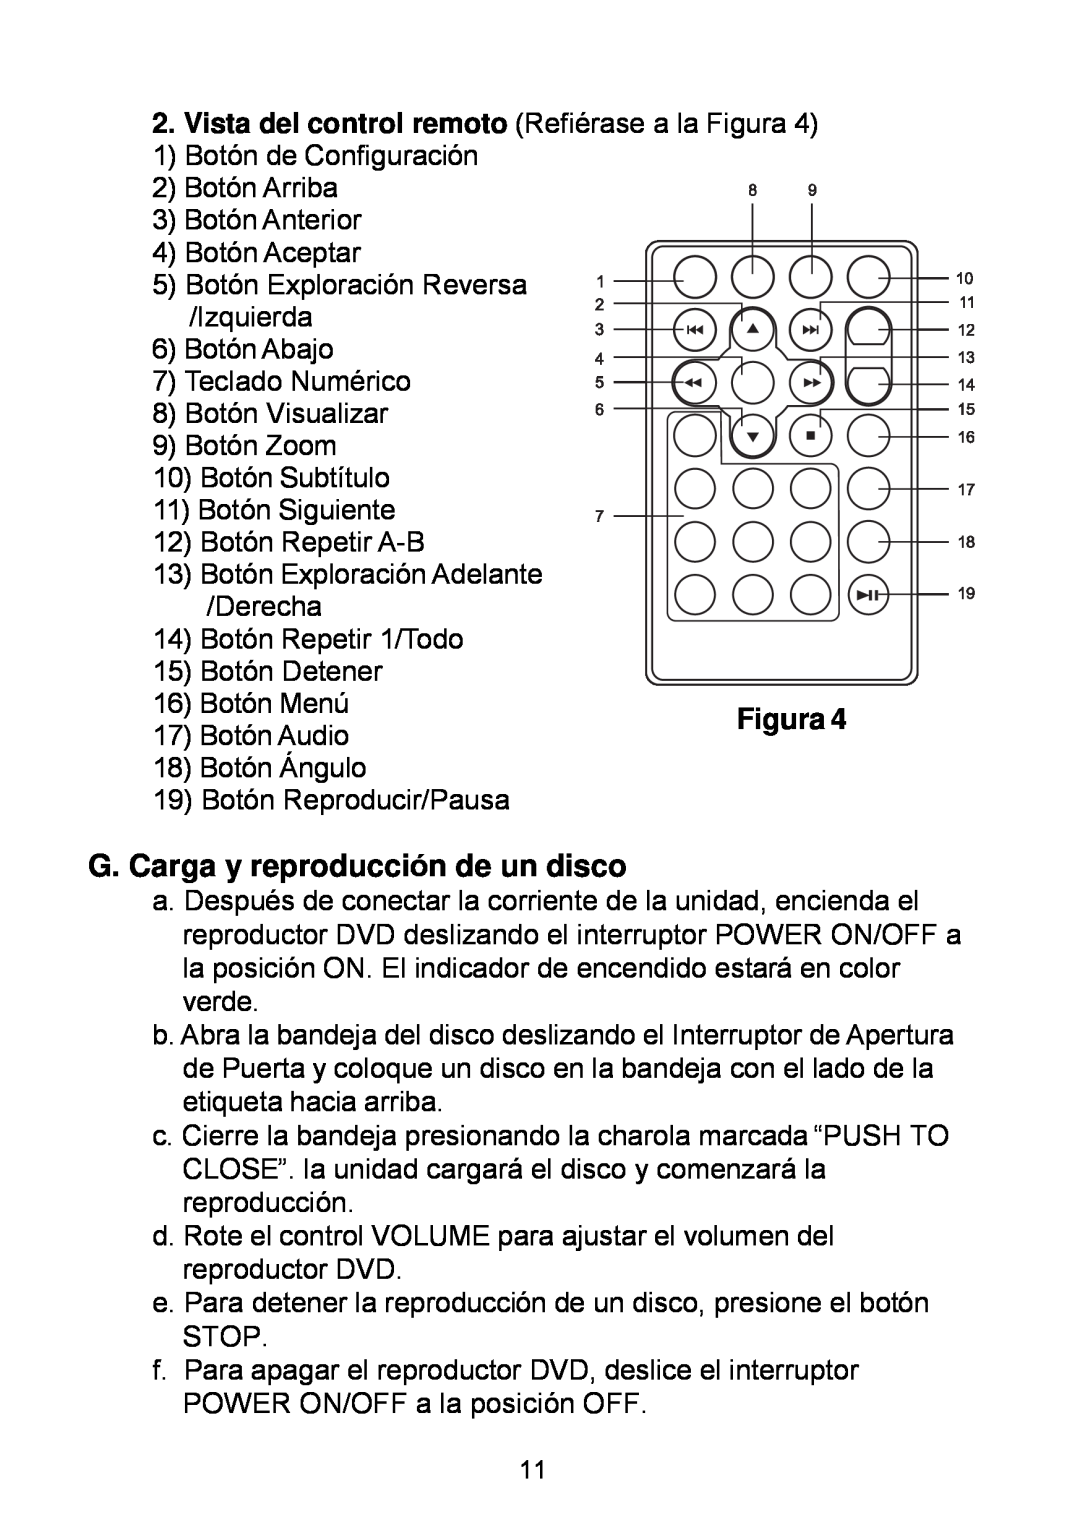 Audiovox D1929B manual G. Carga y reproducción de un disco, Vista del control remoto Refiérase a la Figura 